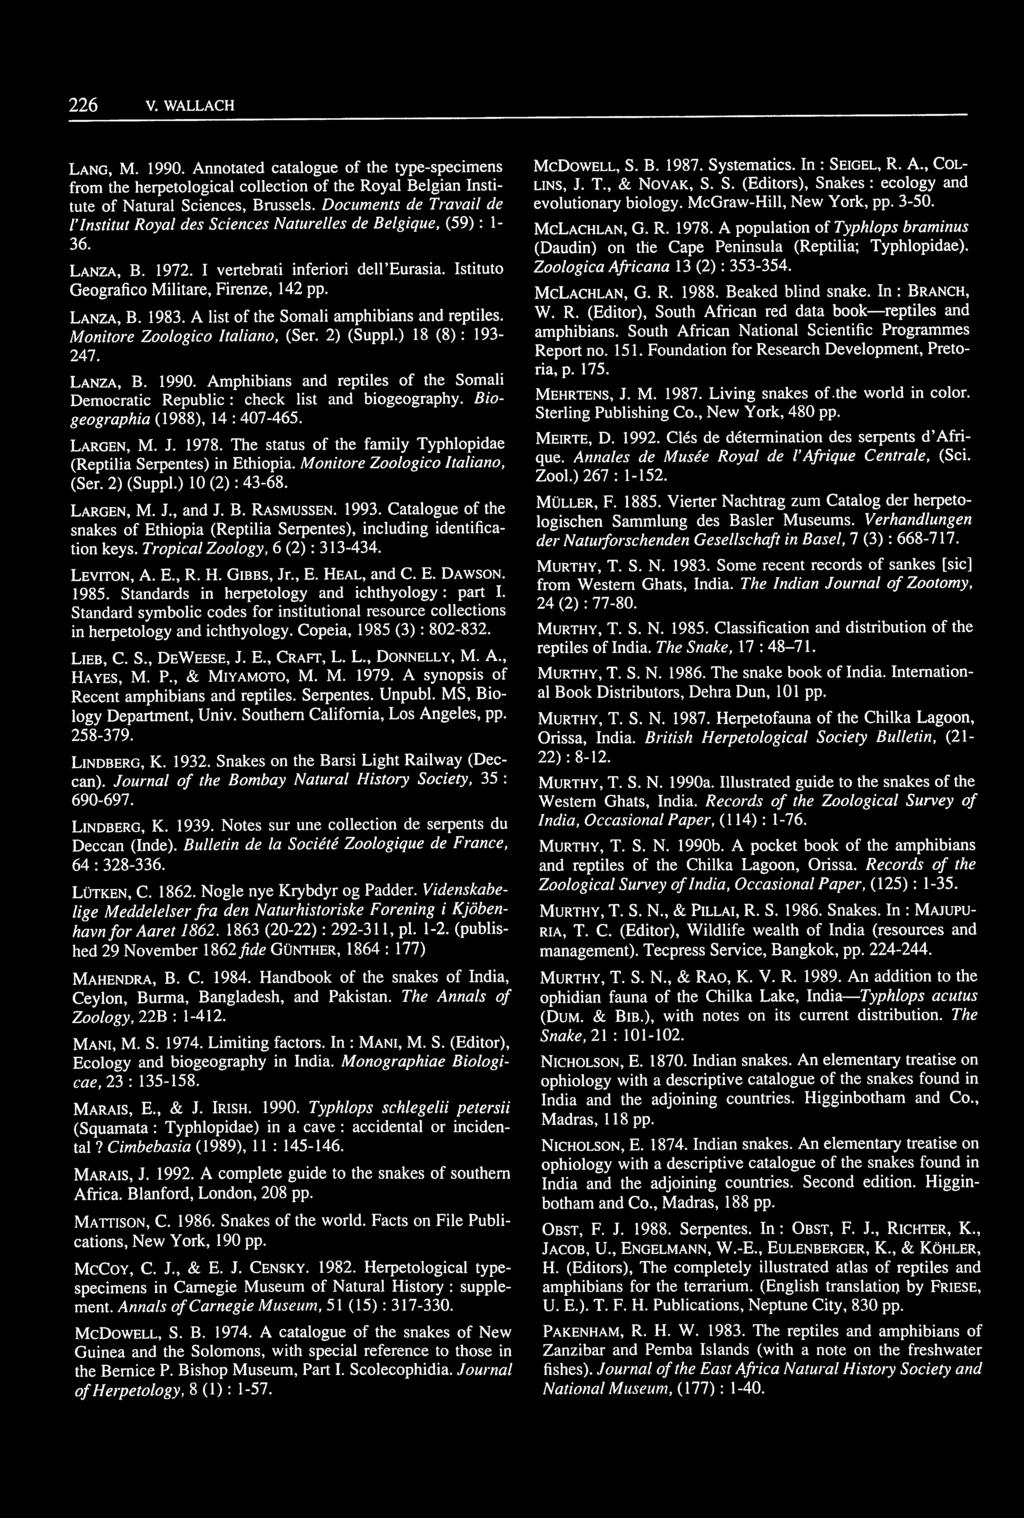 LANZA, B. 1983. A list of the Somali amphibians and reptiles. Monitore Zoologico Italiano, (Ser. 2) (Suppl.) 18 (8) : 193-247. LANZA, B. 1990.